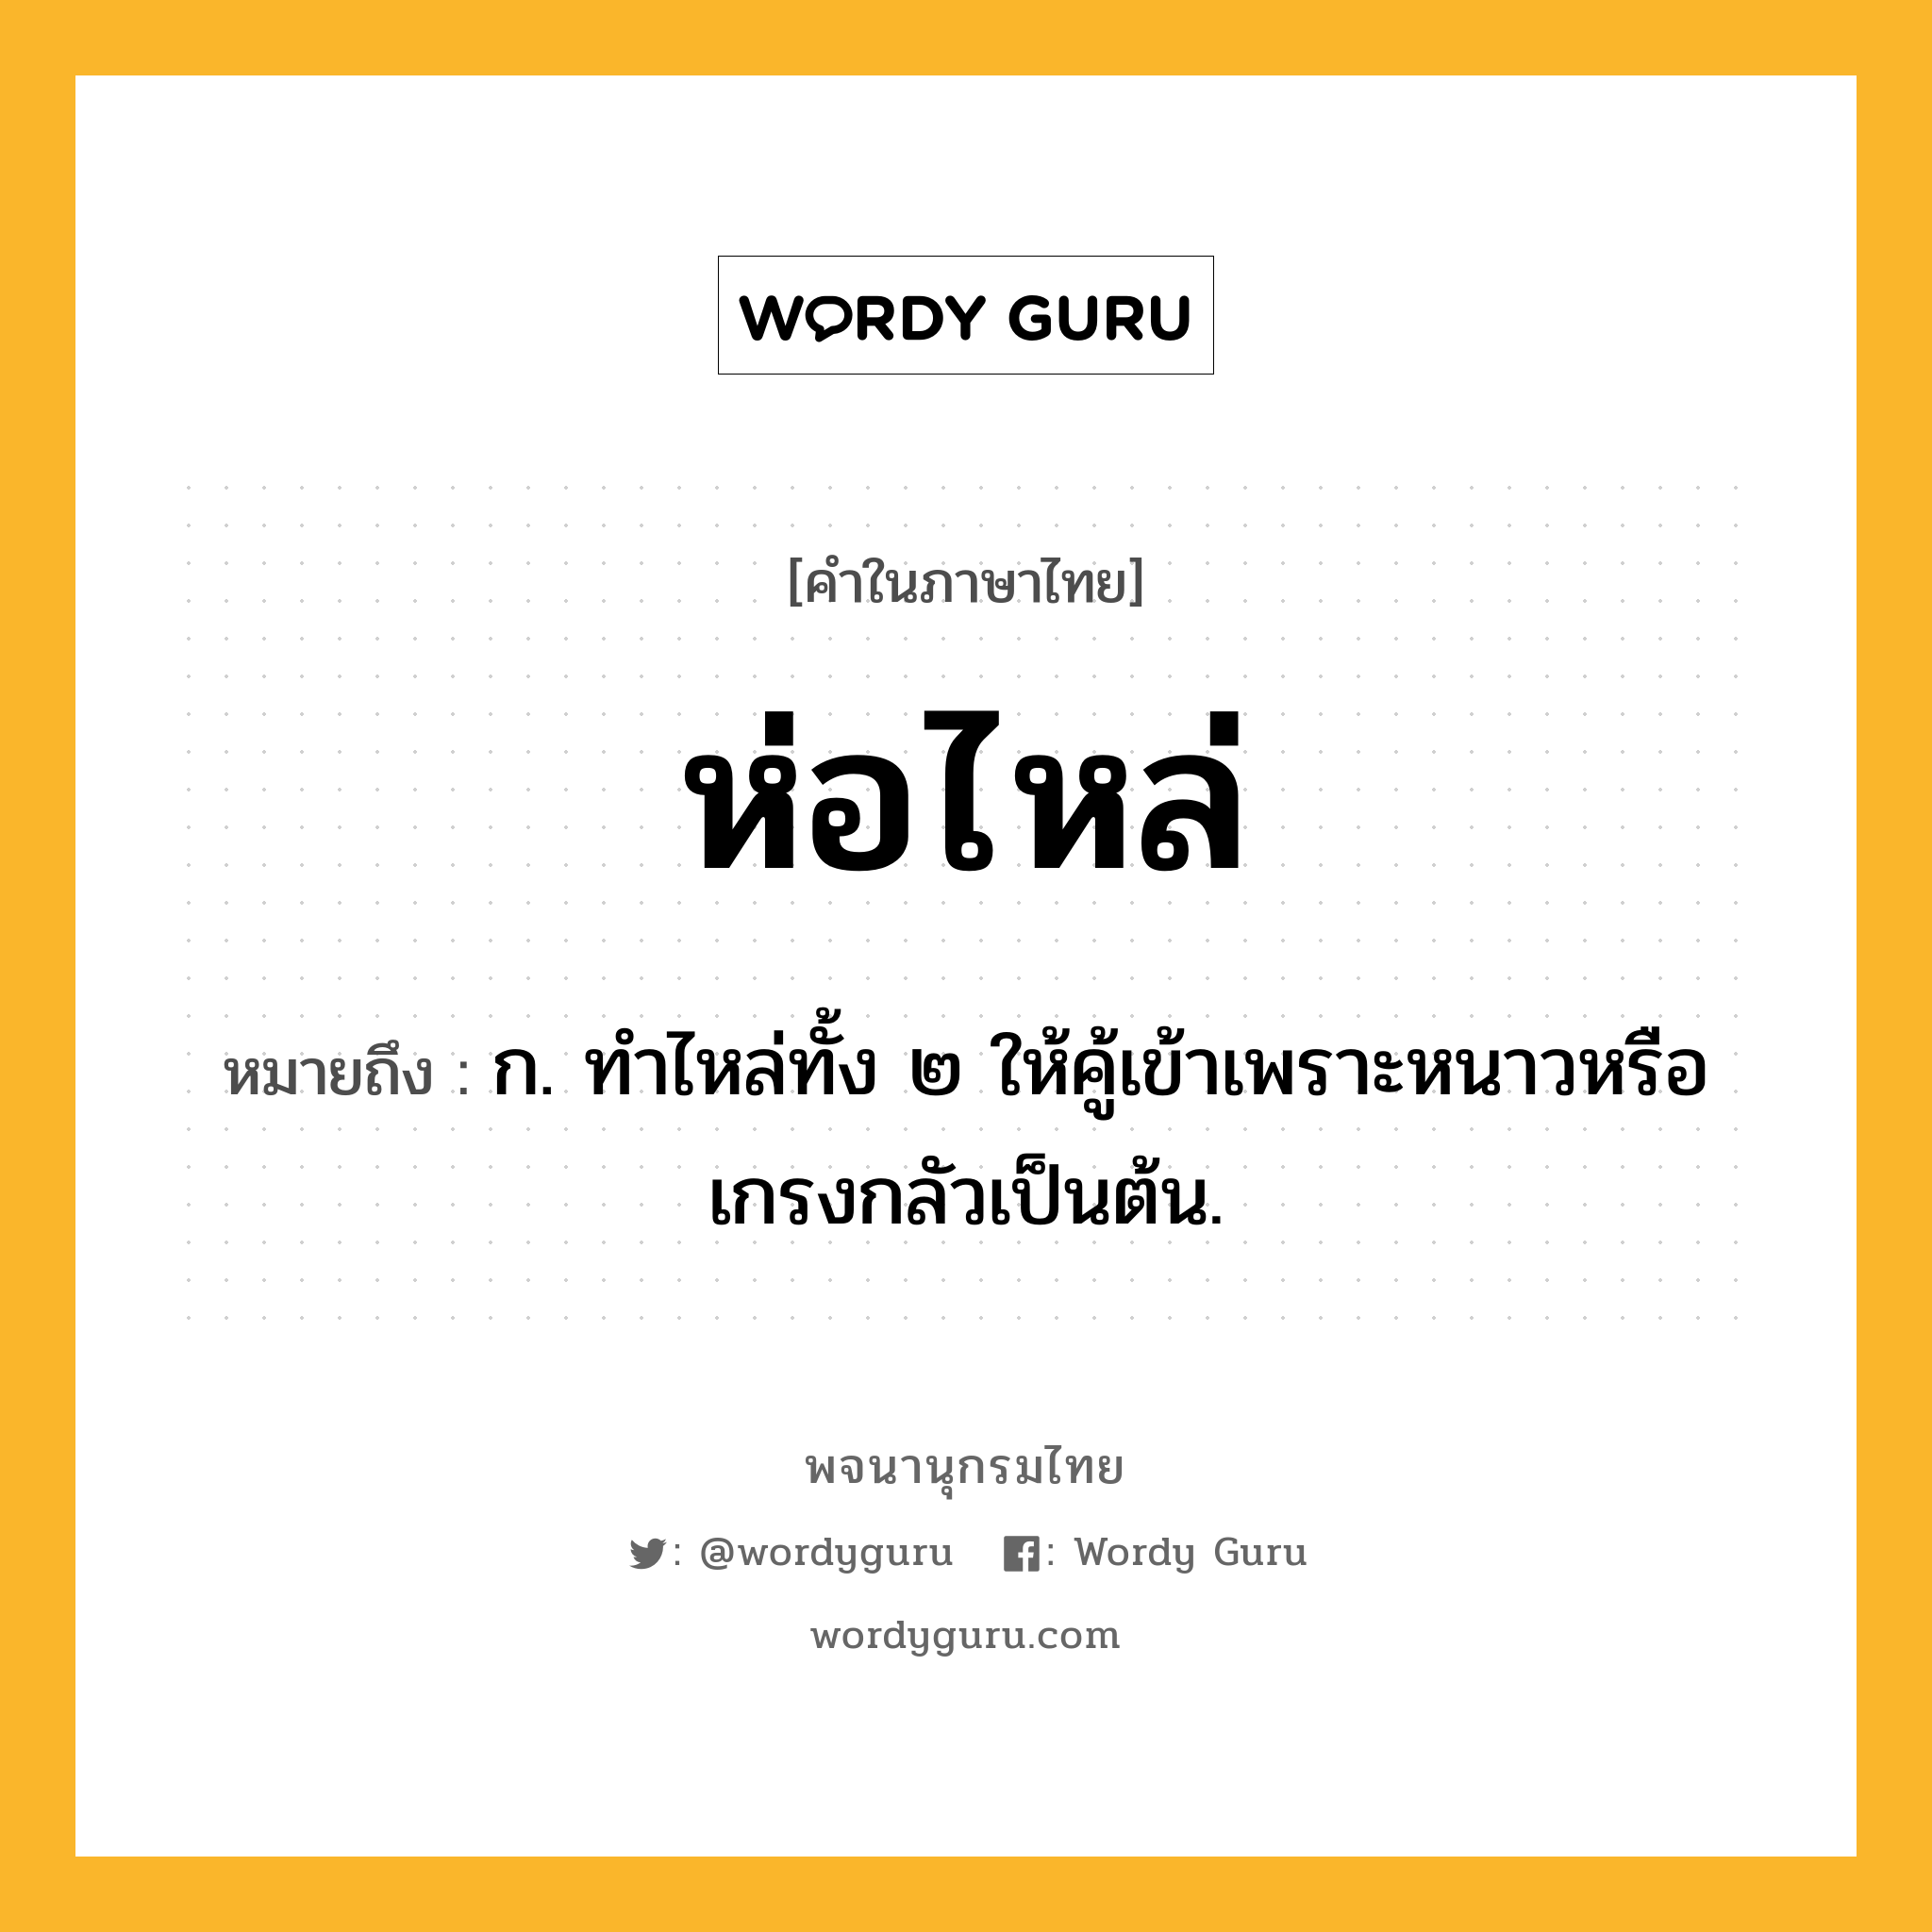 ห่อไหล่ ความหมาย หมายถึงอะไร?, คำในภาษาไทย ห่อไหล่ หมายถึง ก. ทำไหล่ทั้ง ๒ ให้คู้เข้าเพราะหนาวหรือเกรงกลัวเป็นต้น.